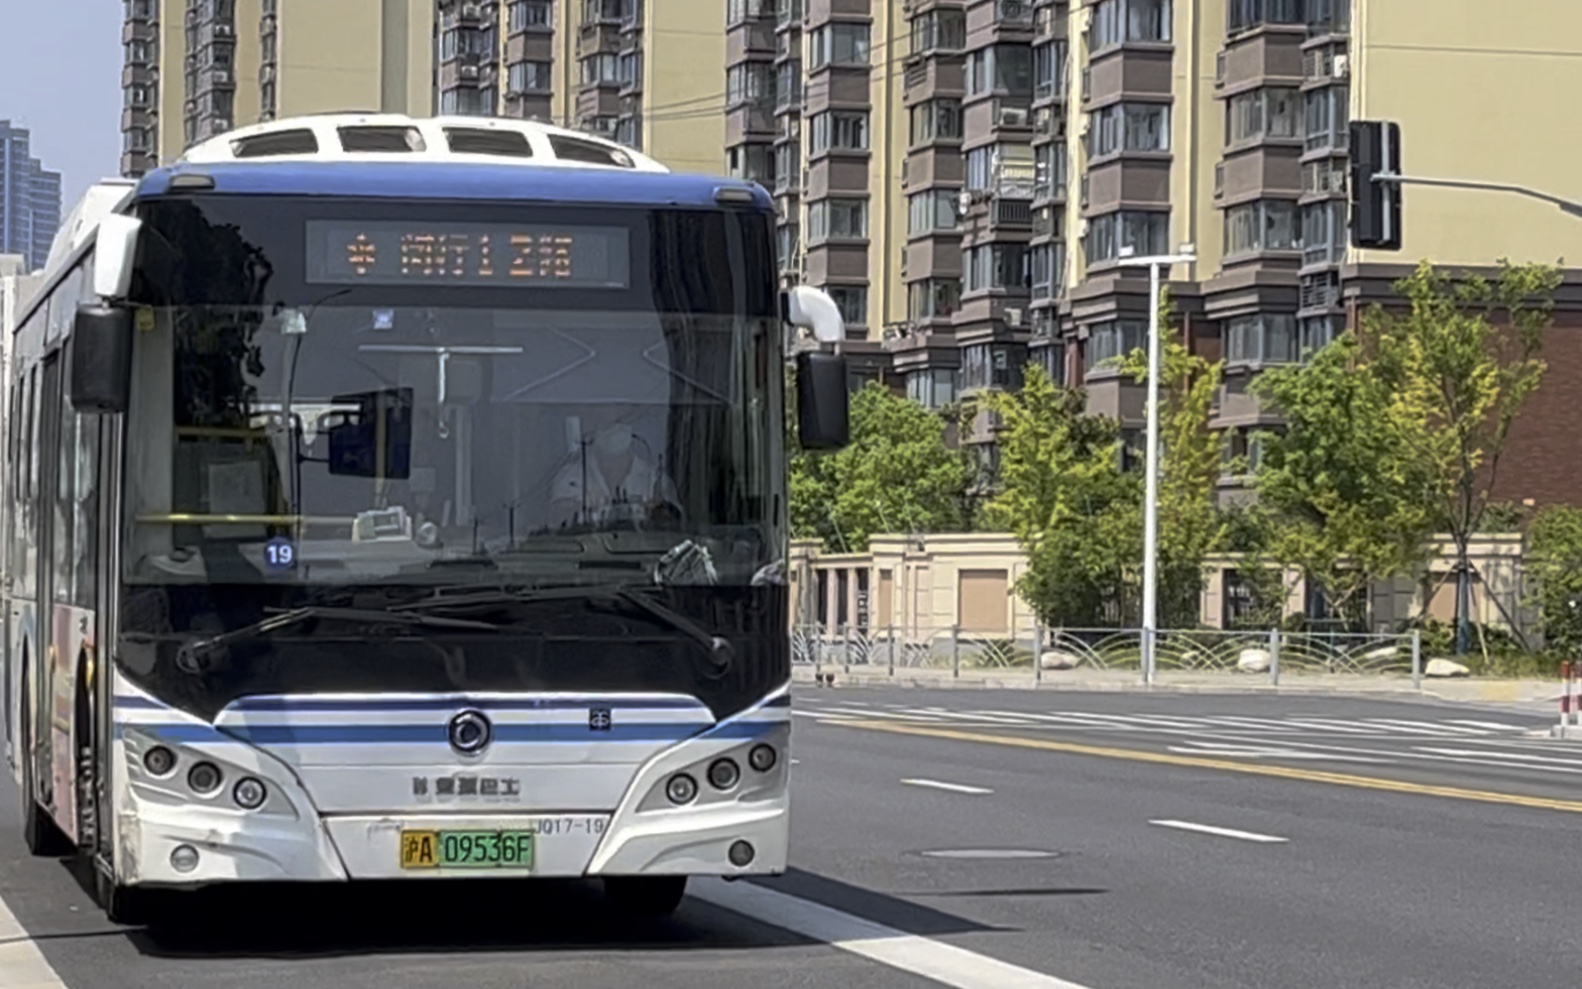 闵行12路公交车图片